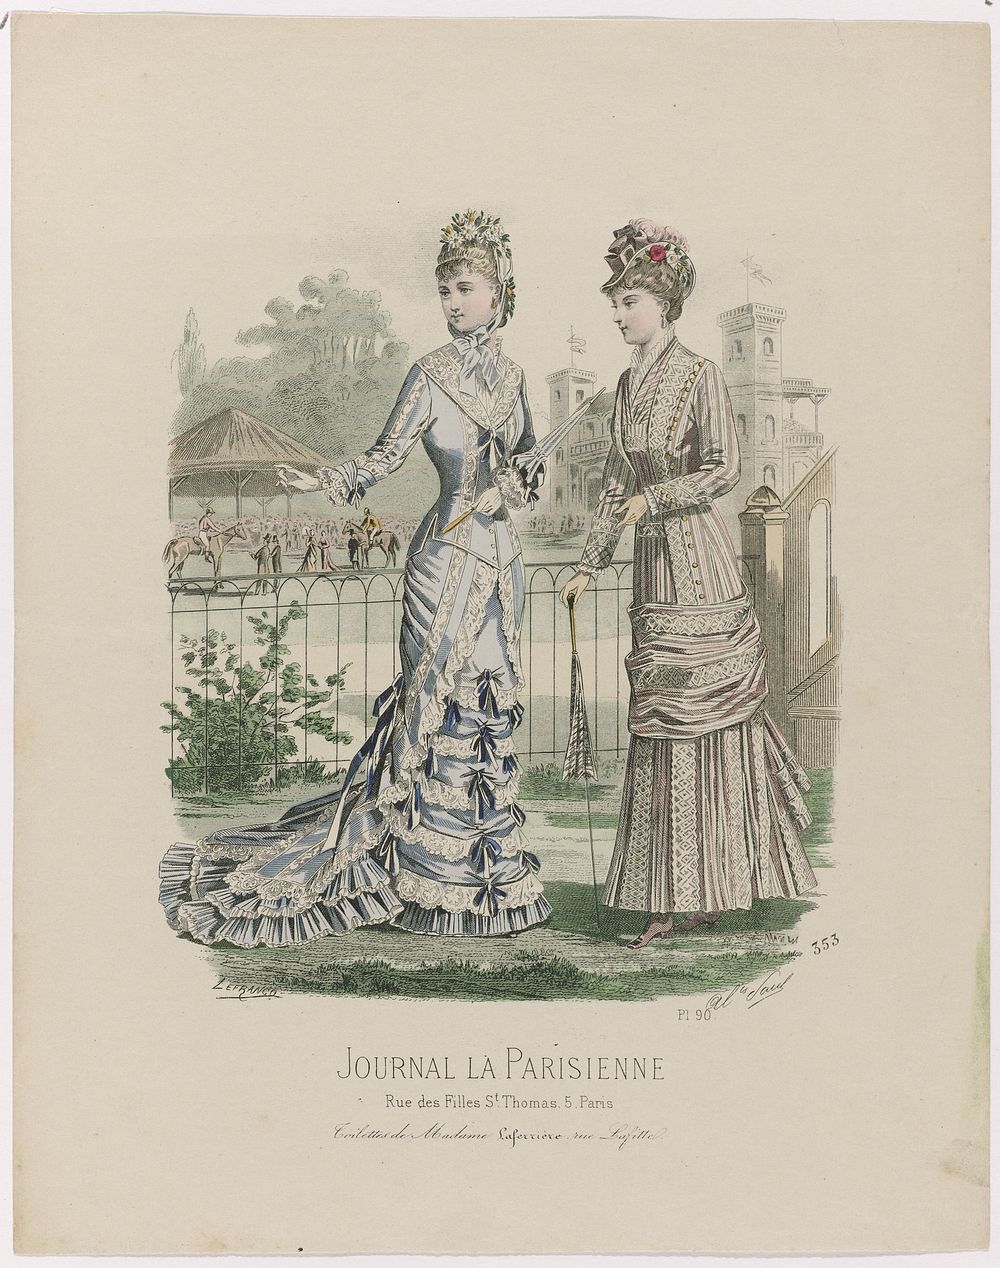 Journal la Parisienne, juli 1878, No. 353, Pl. 90 : Toilettes de Madam (...) (1878) by A Paul and A Lefrancq